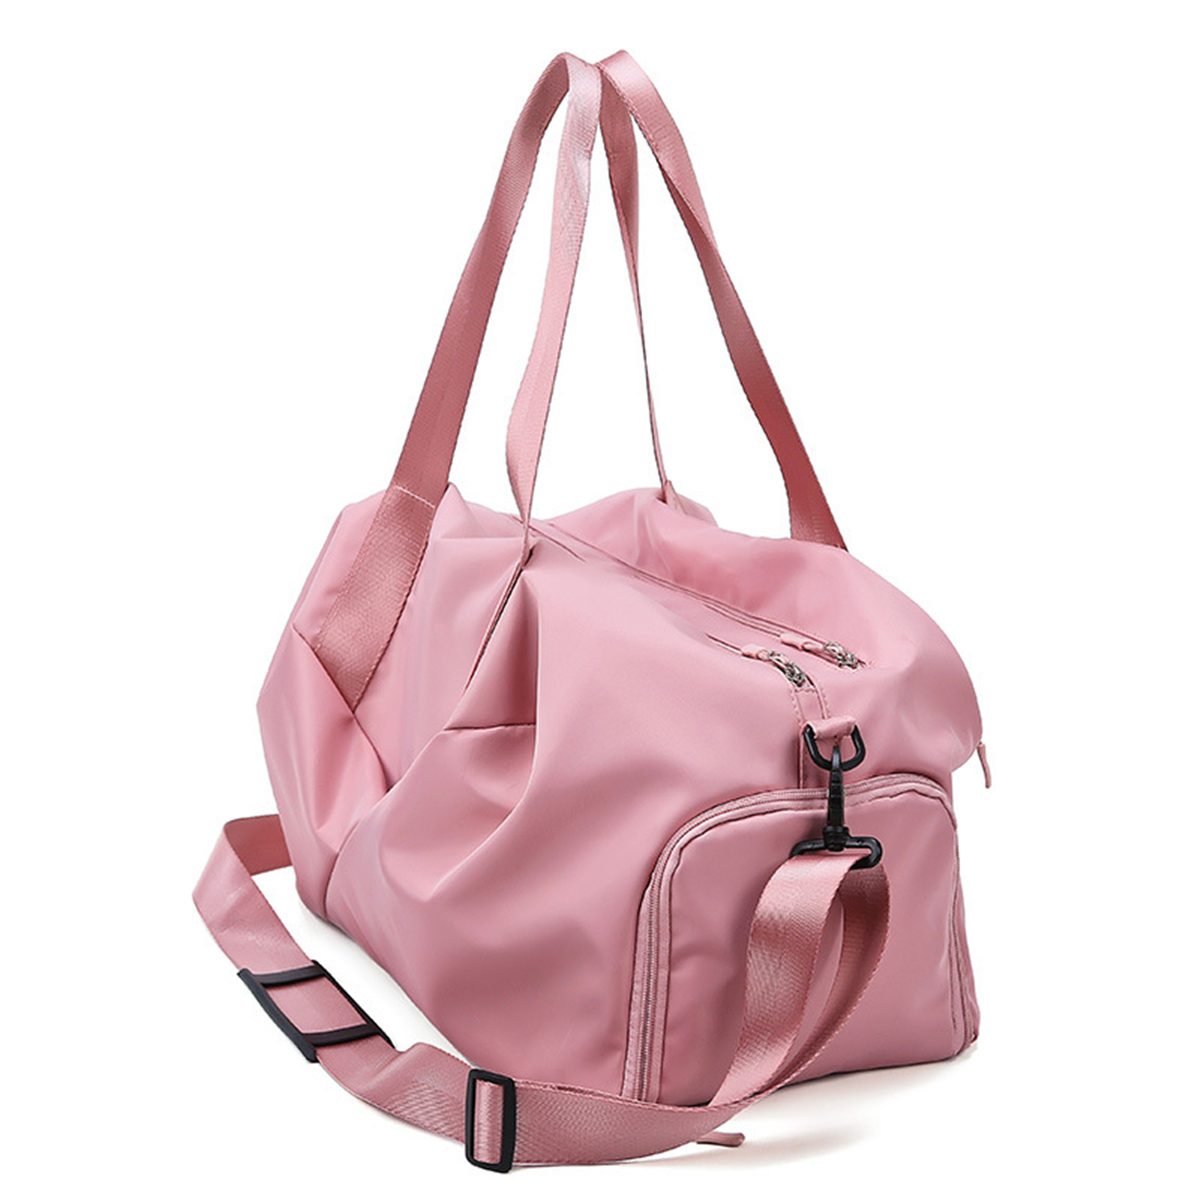 Dry Wet Separation Large Capacity Sports Gym Bag Fitness Yoga Handbag Travel Shoulder Bag